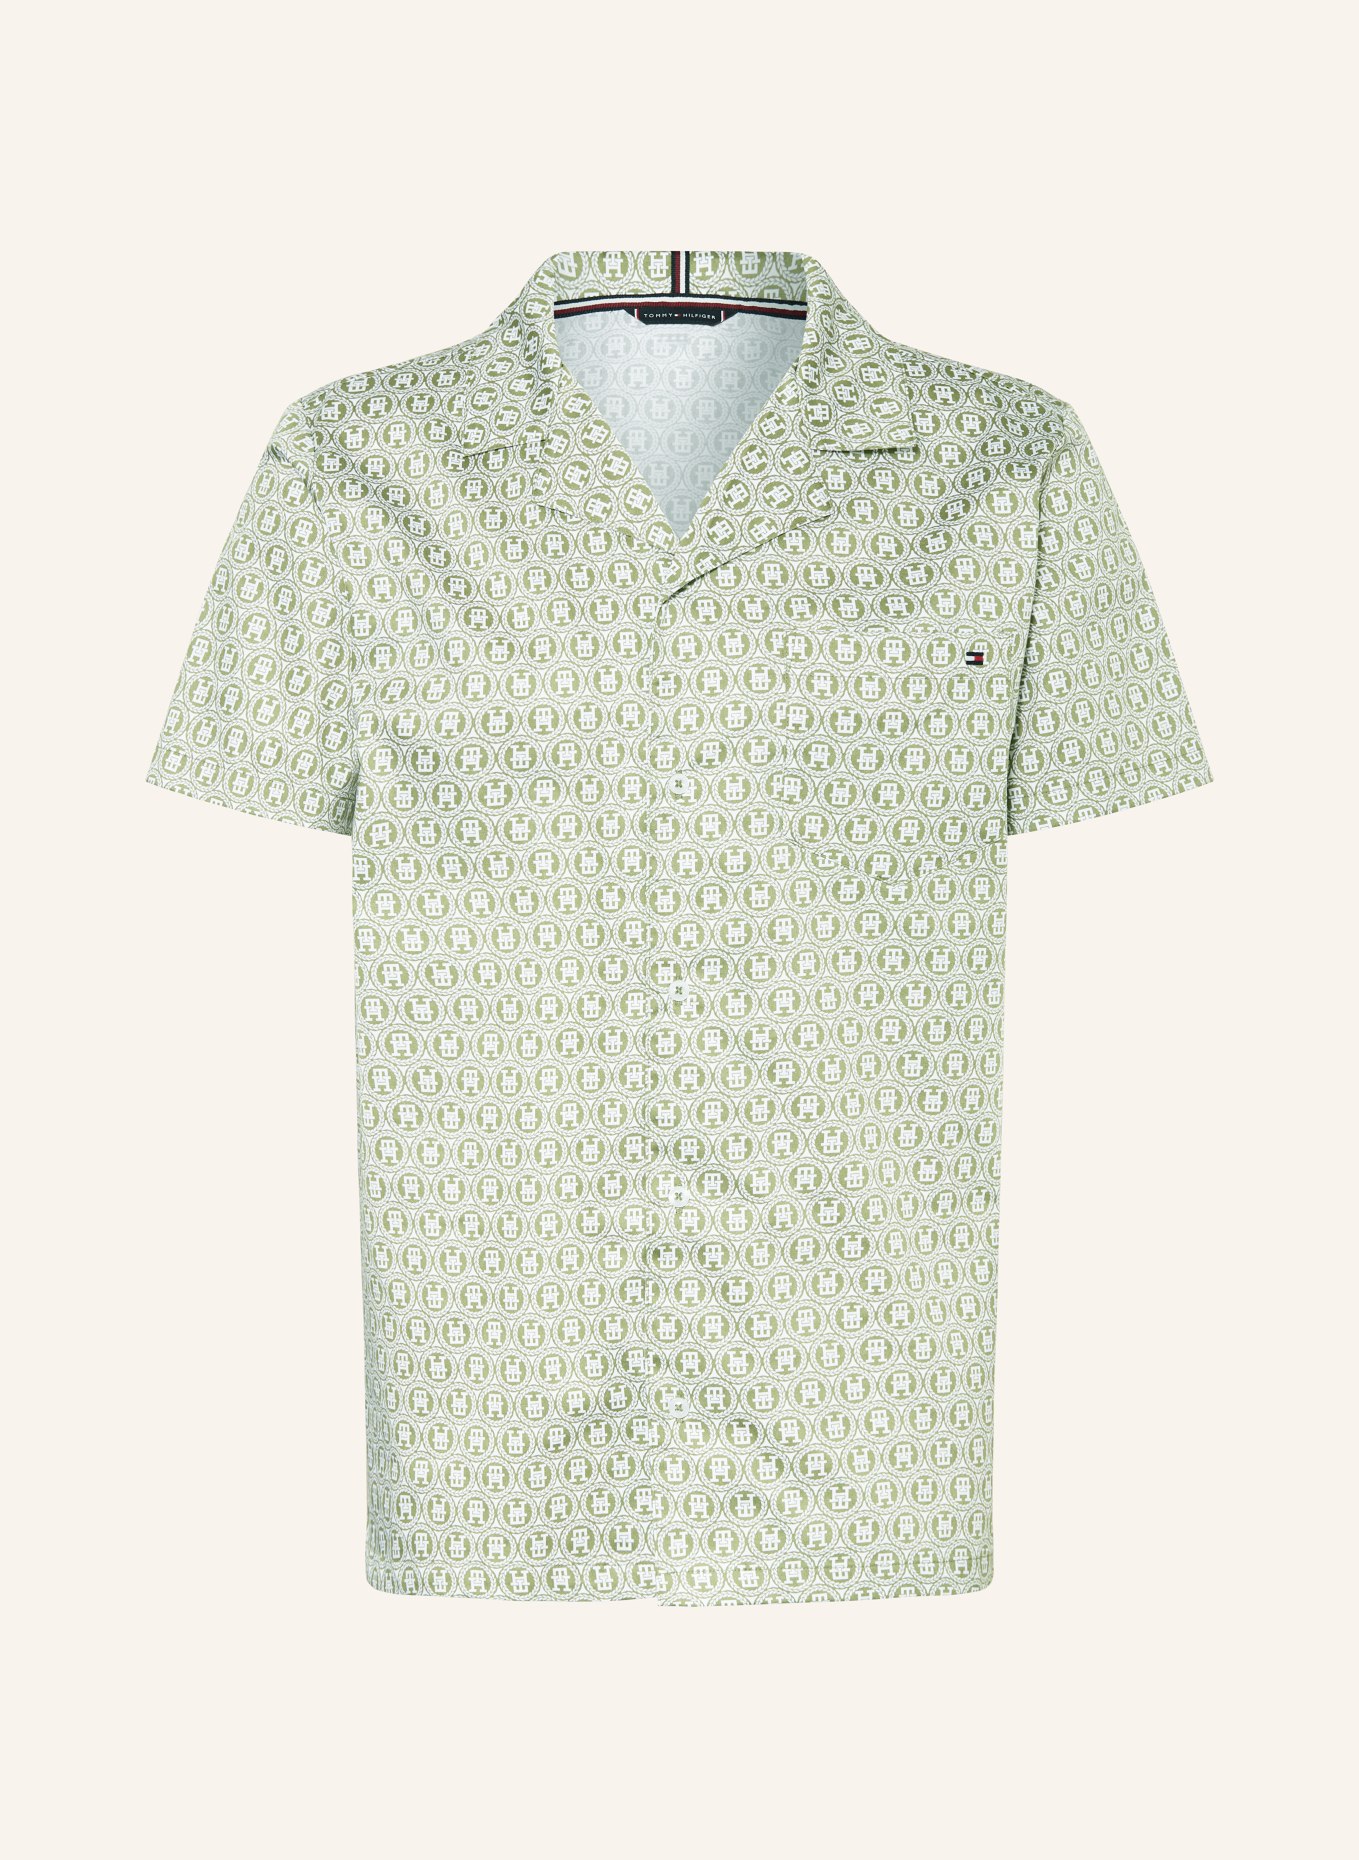 TOMMY HILFIGER Schlafshirt, Farbe: OLIV/ WEISS (Bild 1)